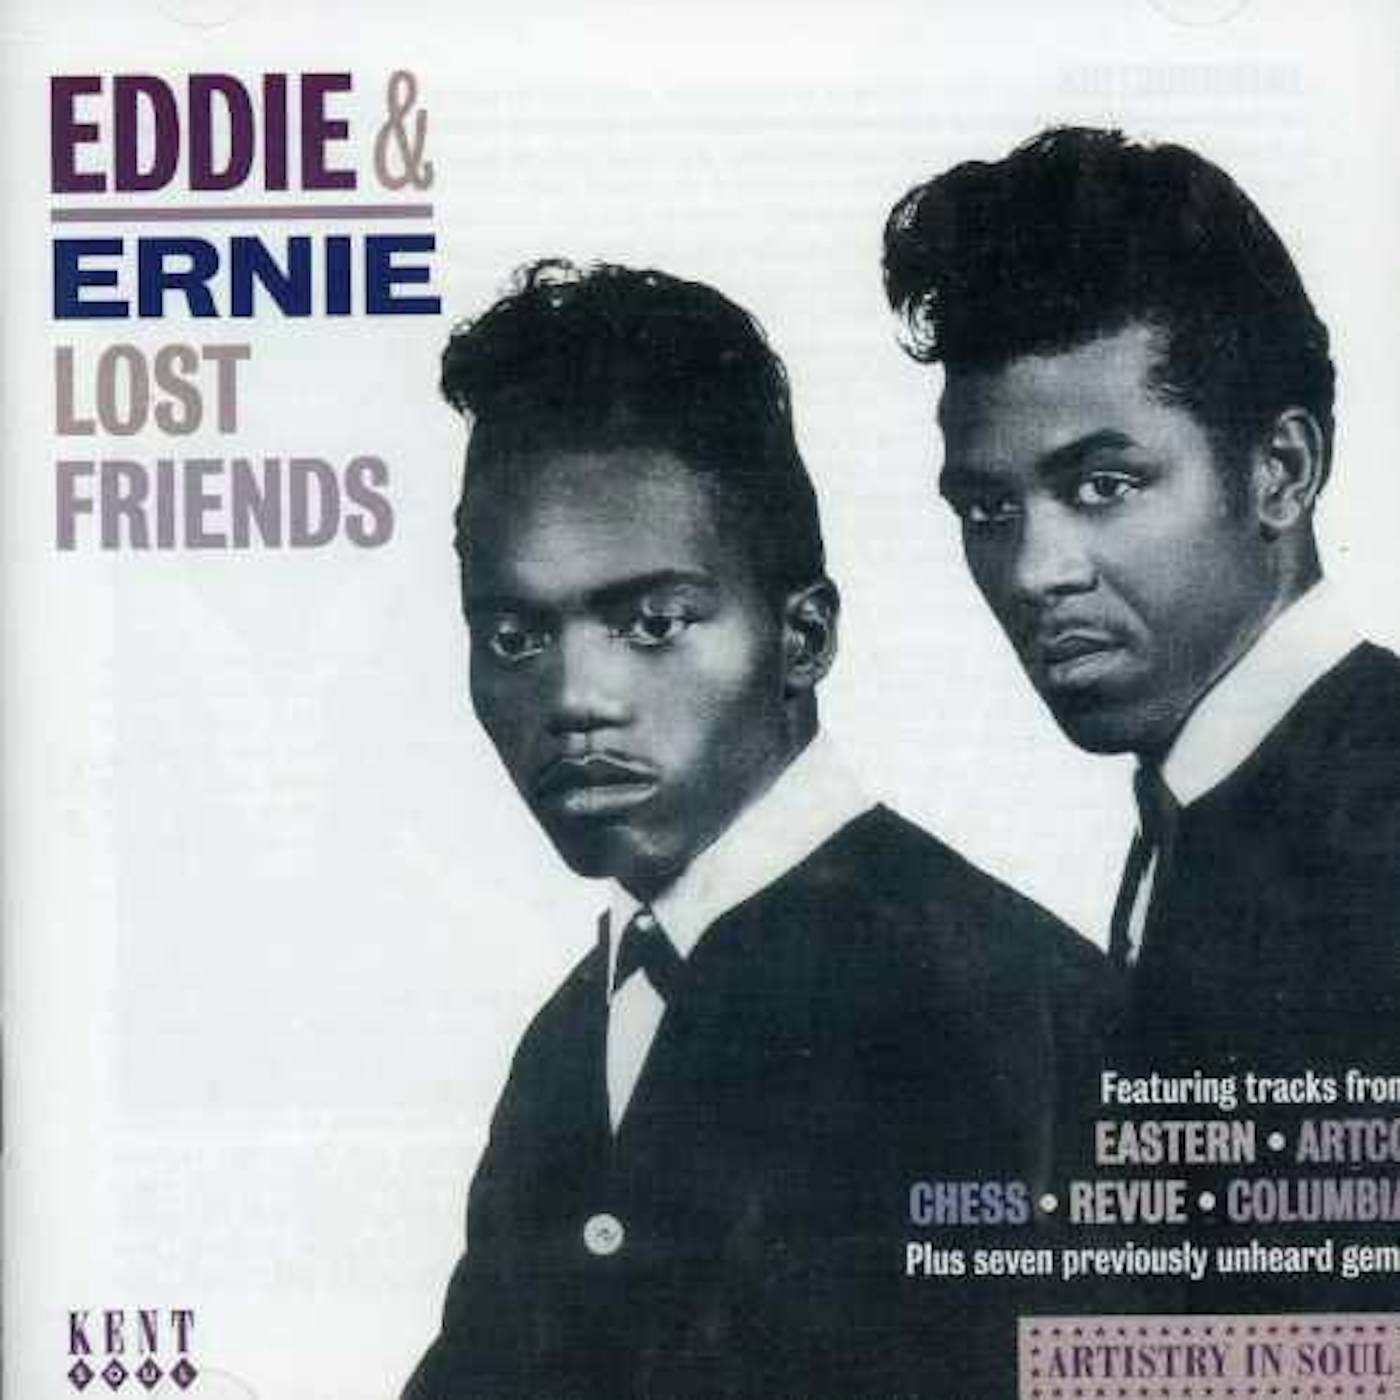 Eddie & Ernie LOST FRIENDS CD